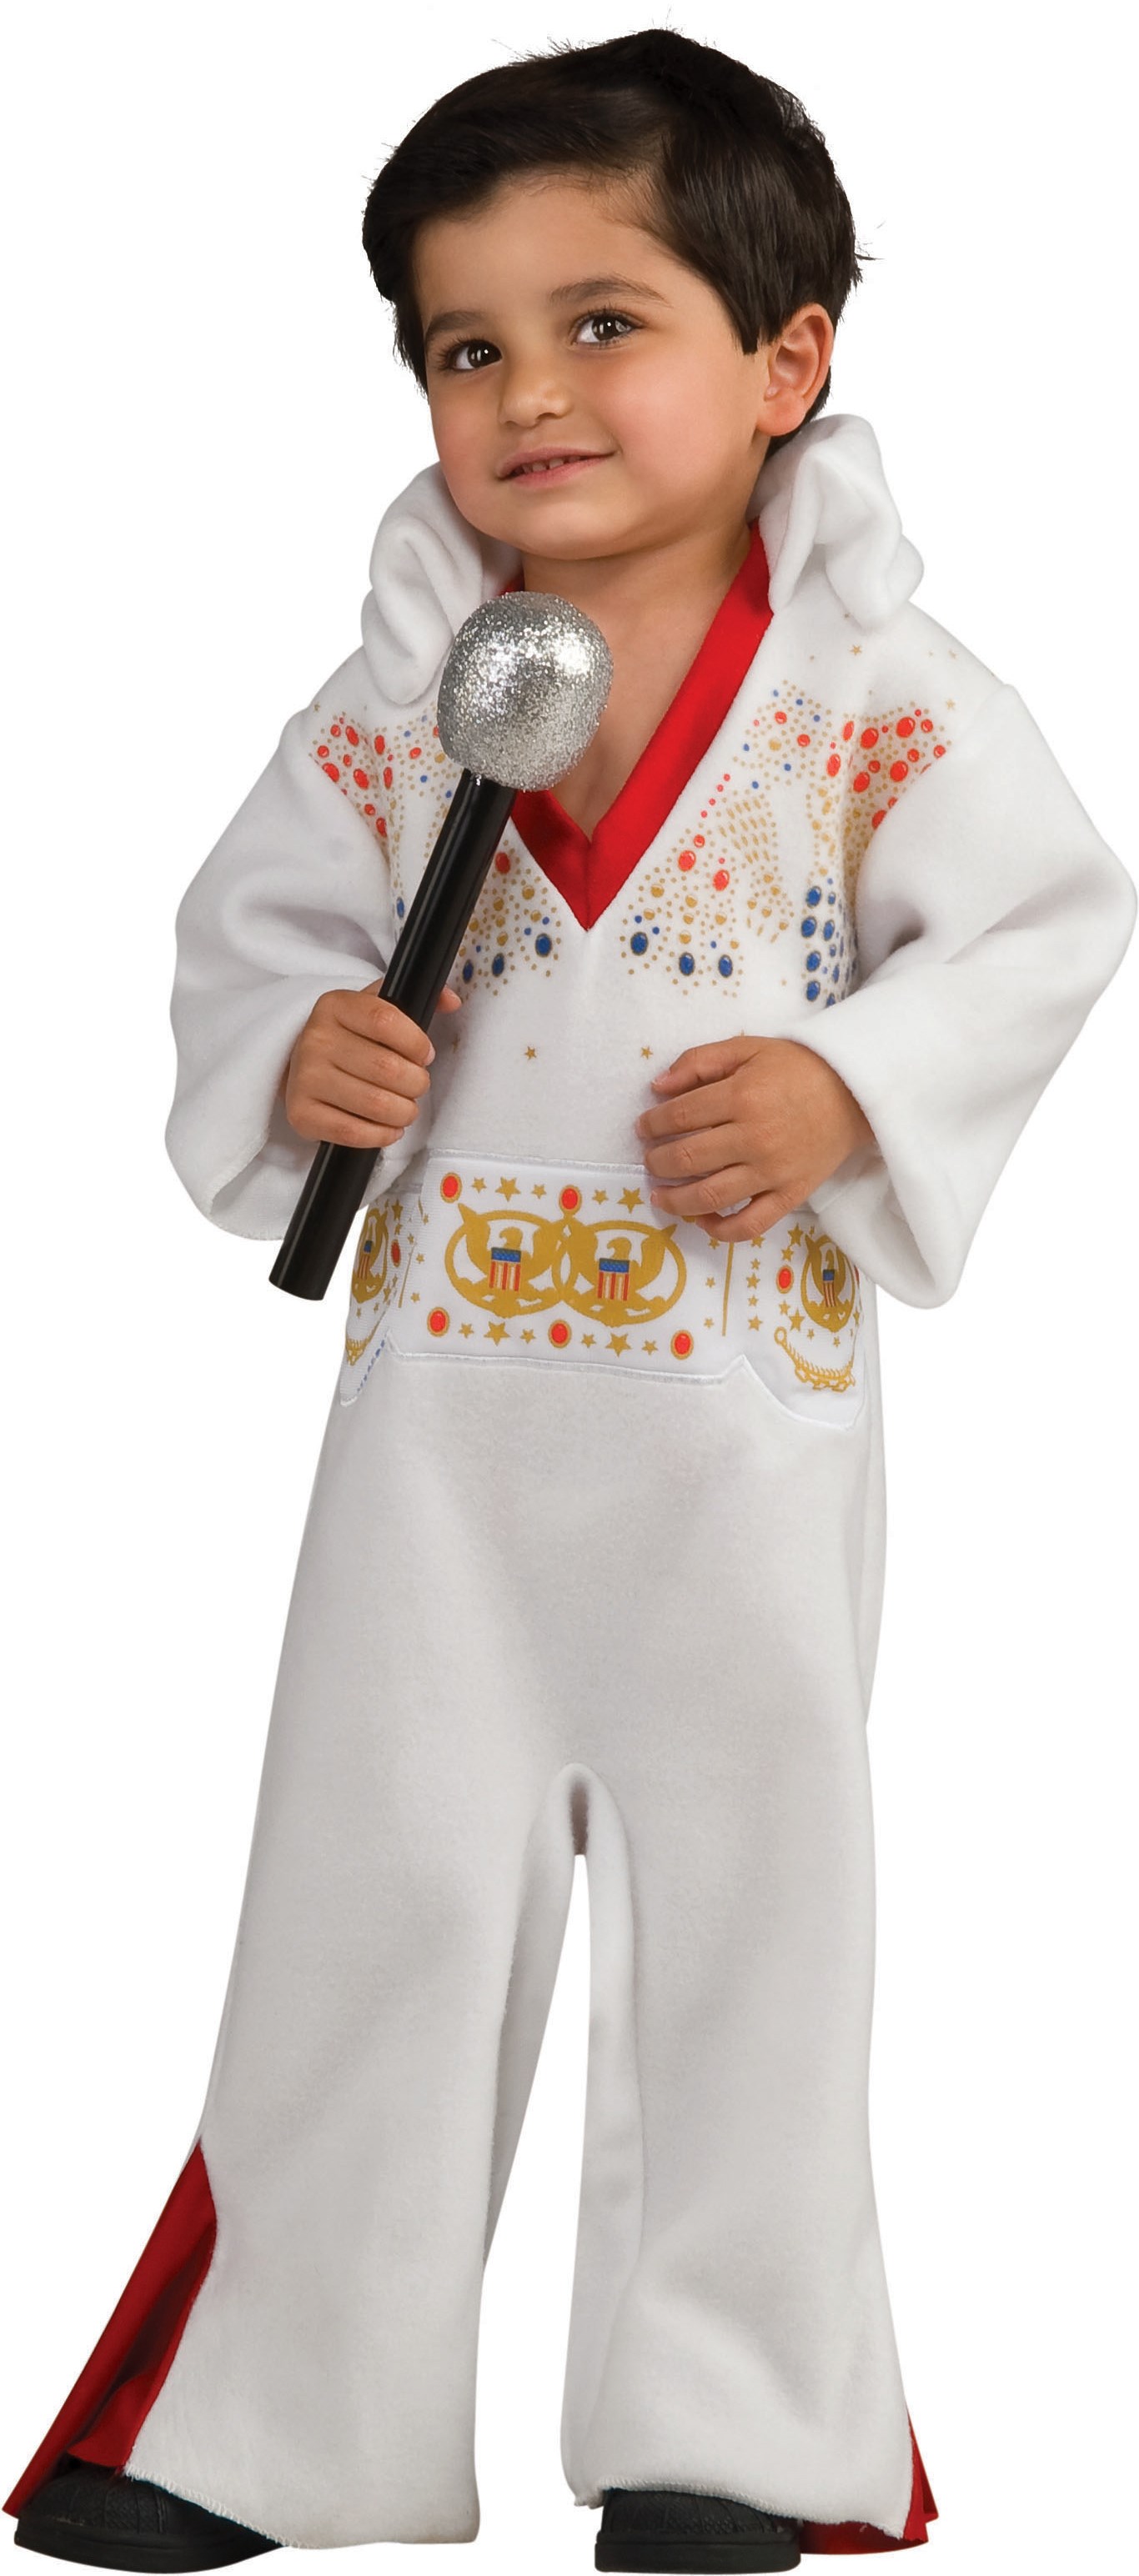 Elvis Infant / Toddler Costume